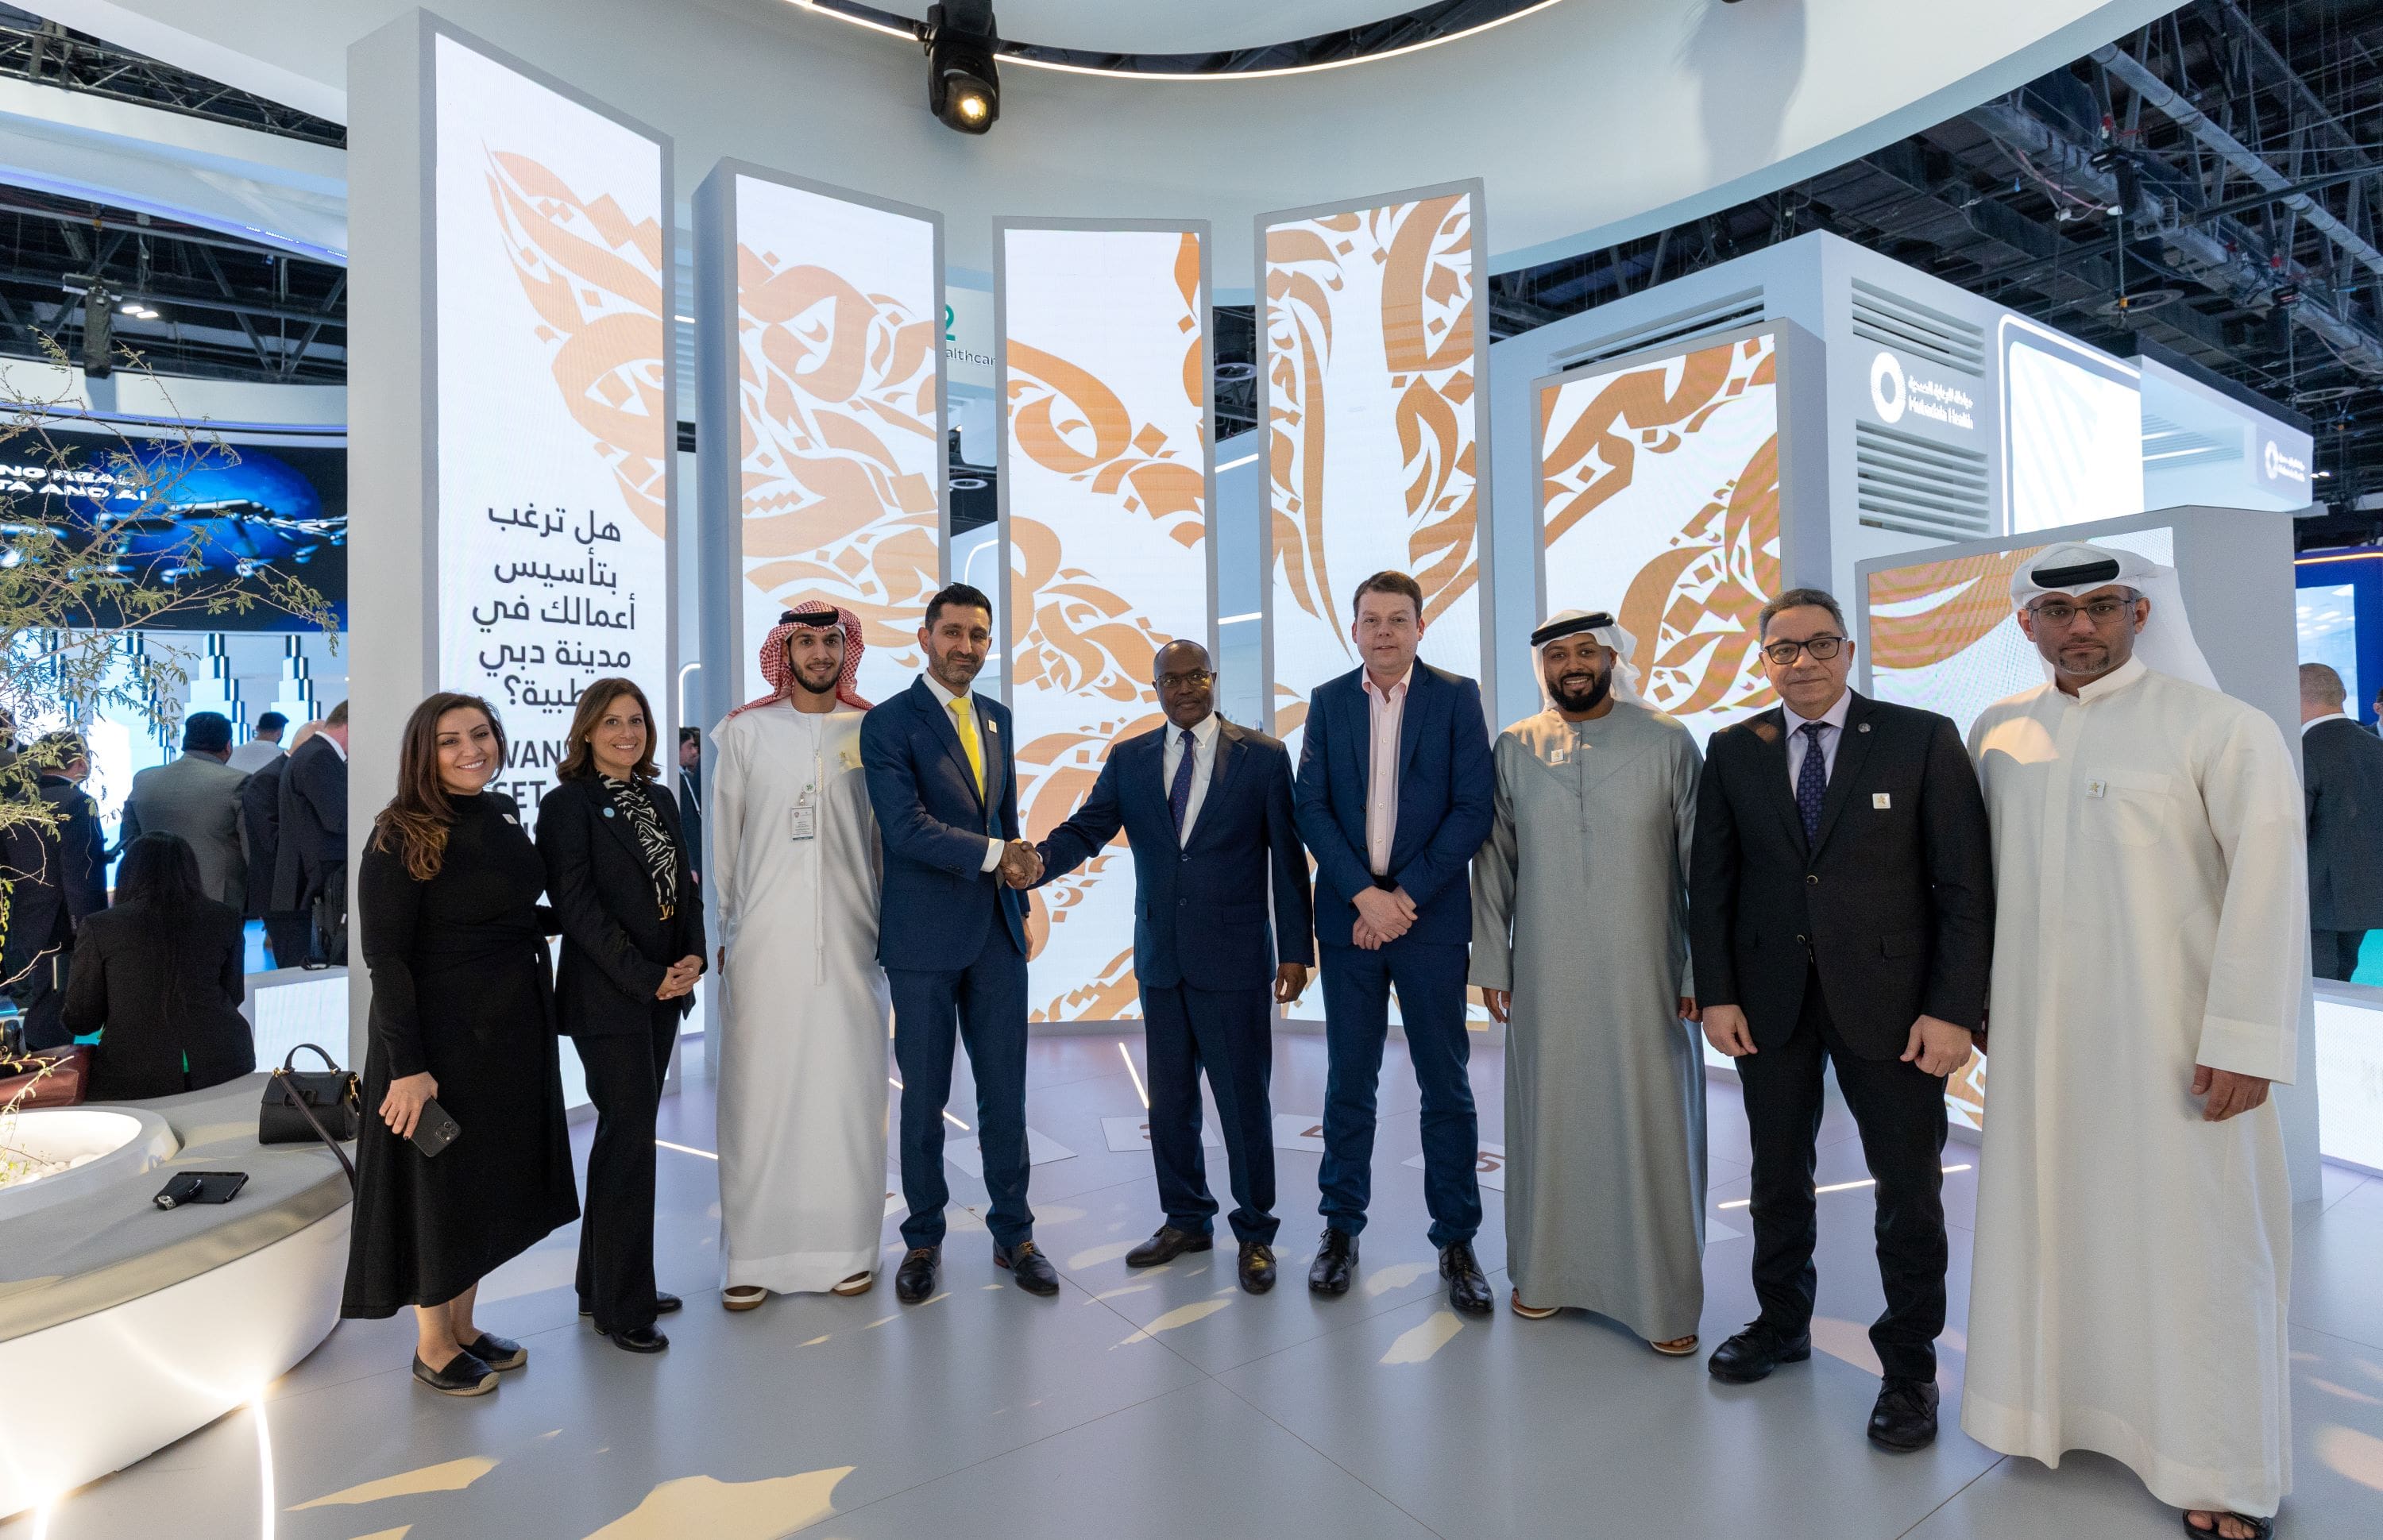 مدينة دبي الطبية توقع اتفاقيةً مع مستشفى مورفيلدز دبي للعيون خلال معرض ومؤتمر الصحة العربي لتعزيز خدمات طب العيون في الإمارة